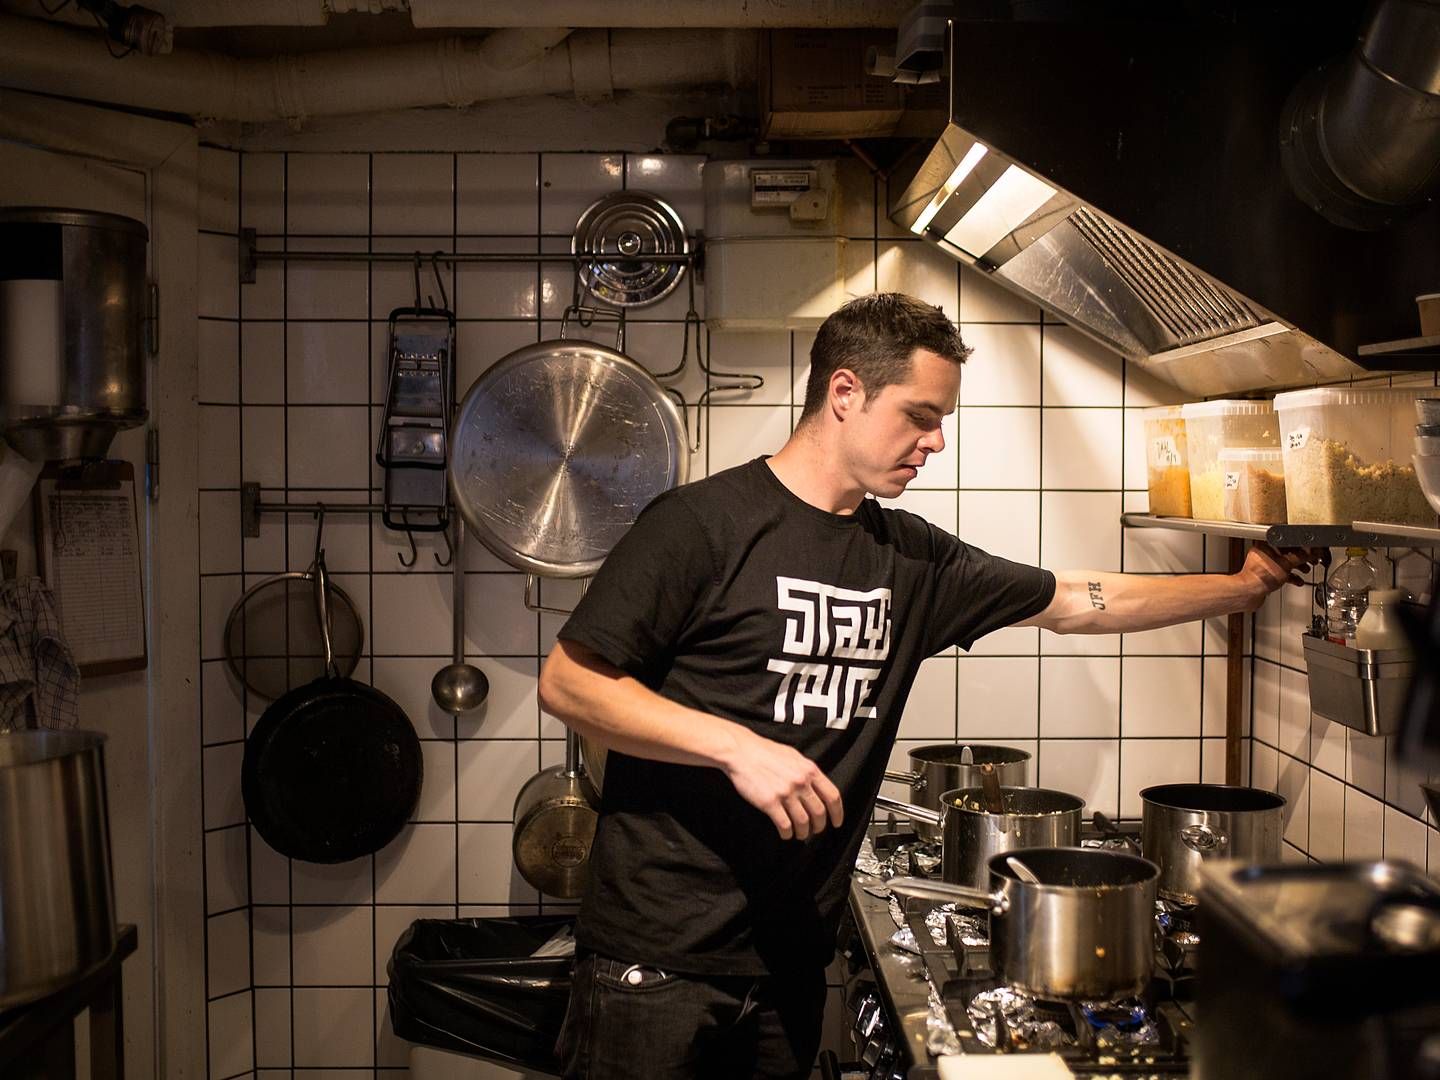 Stifter og adm. direktør Lasse Skjønning Andersen åbnede Grød i 2011. I dag har kæden 10 restauranter i Storkøbenhavn og Aarhus. v | Foto: Ivan Boll/Ritzau Scanpix.